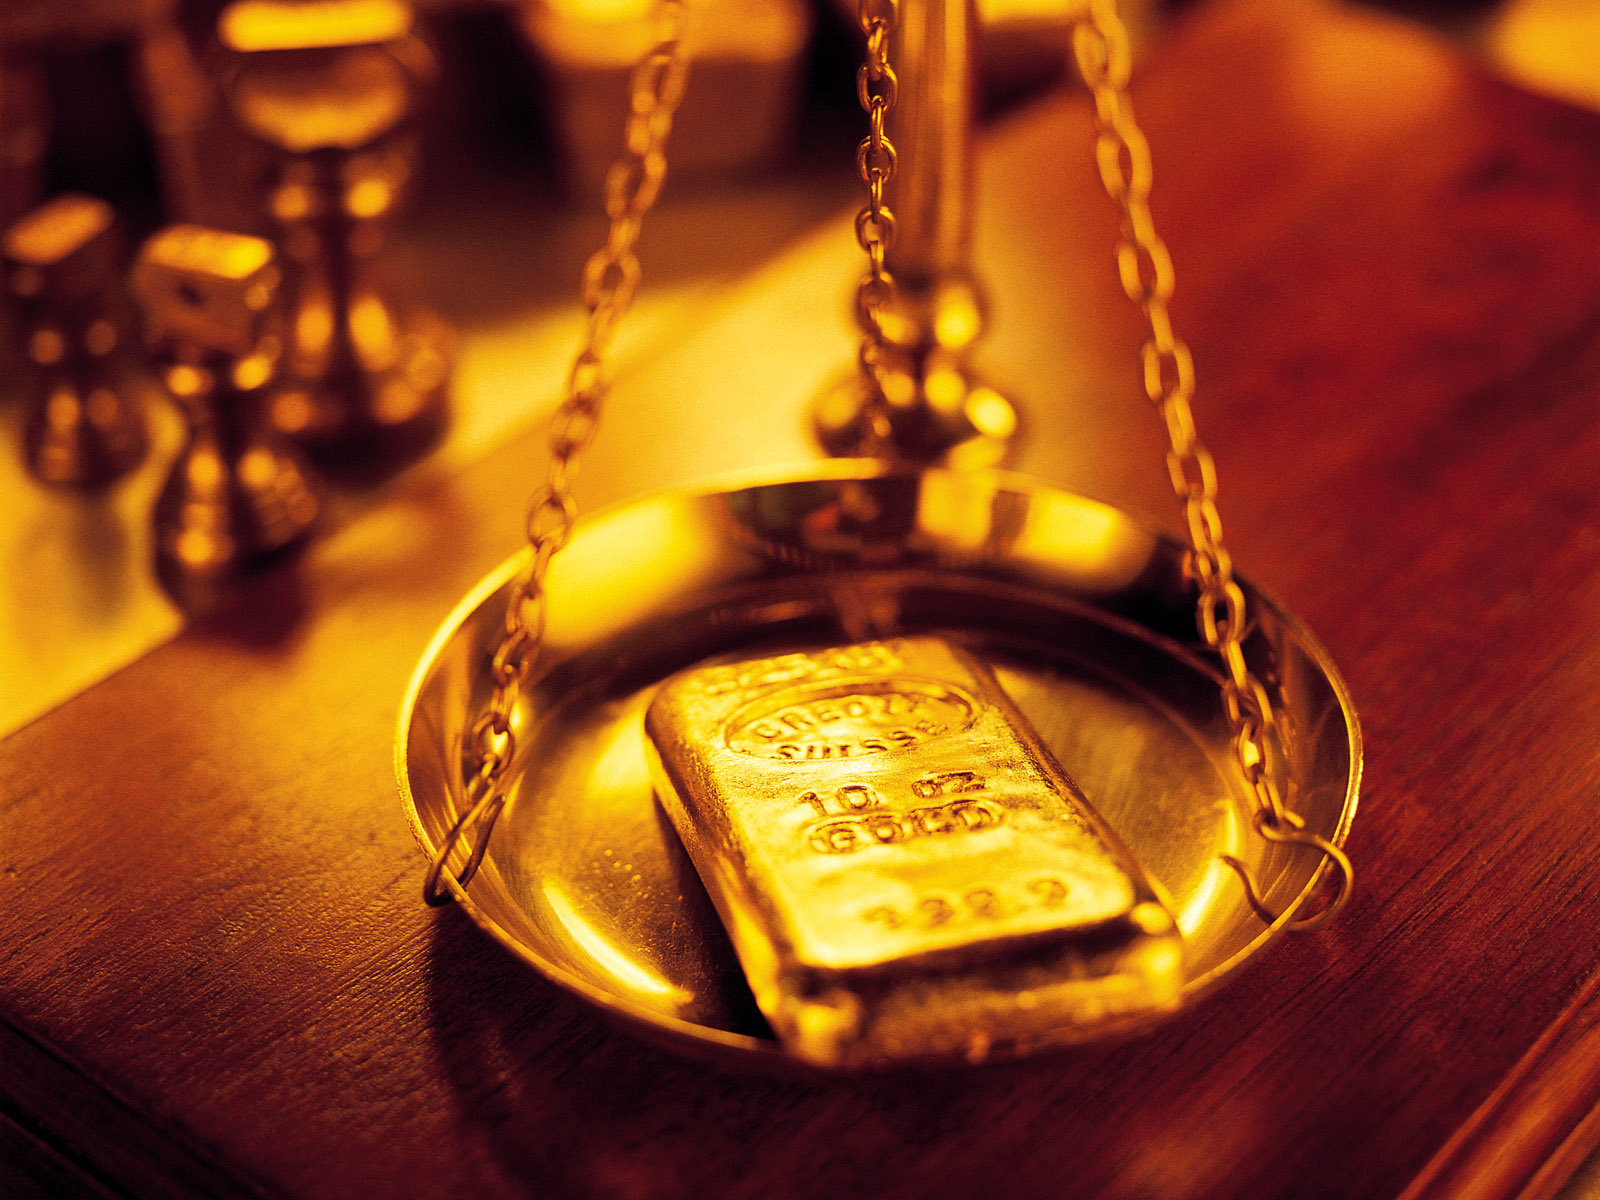 Chênh lệch giữa giá vàng trong nước và giá vàng thế giới đang ở mức cao, khoảng 3,84 triệu đồng/lượng